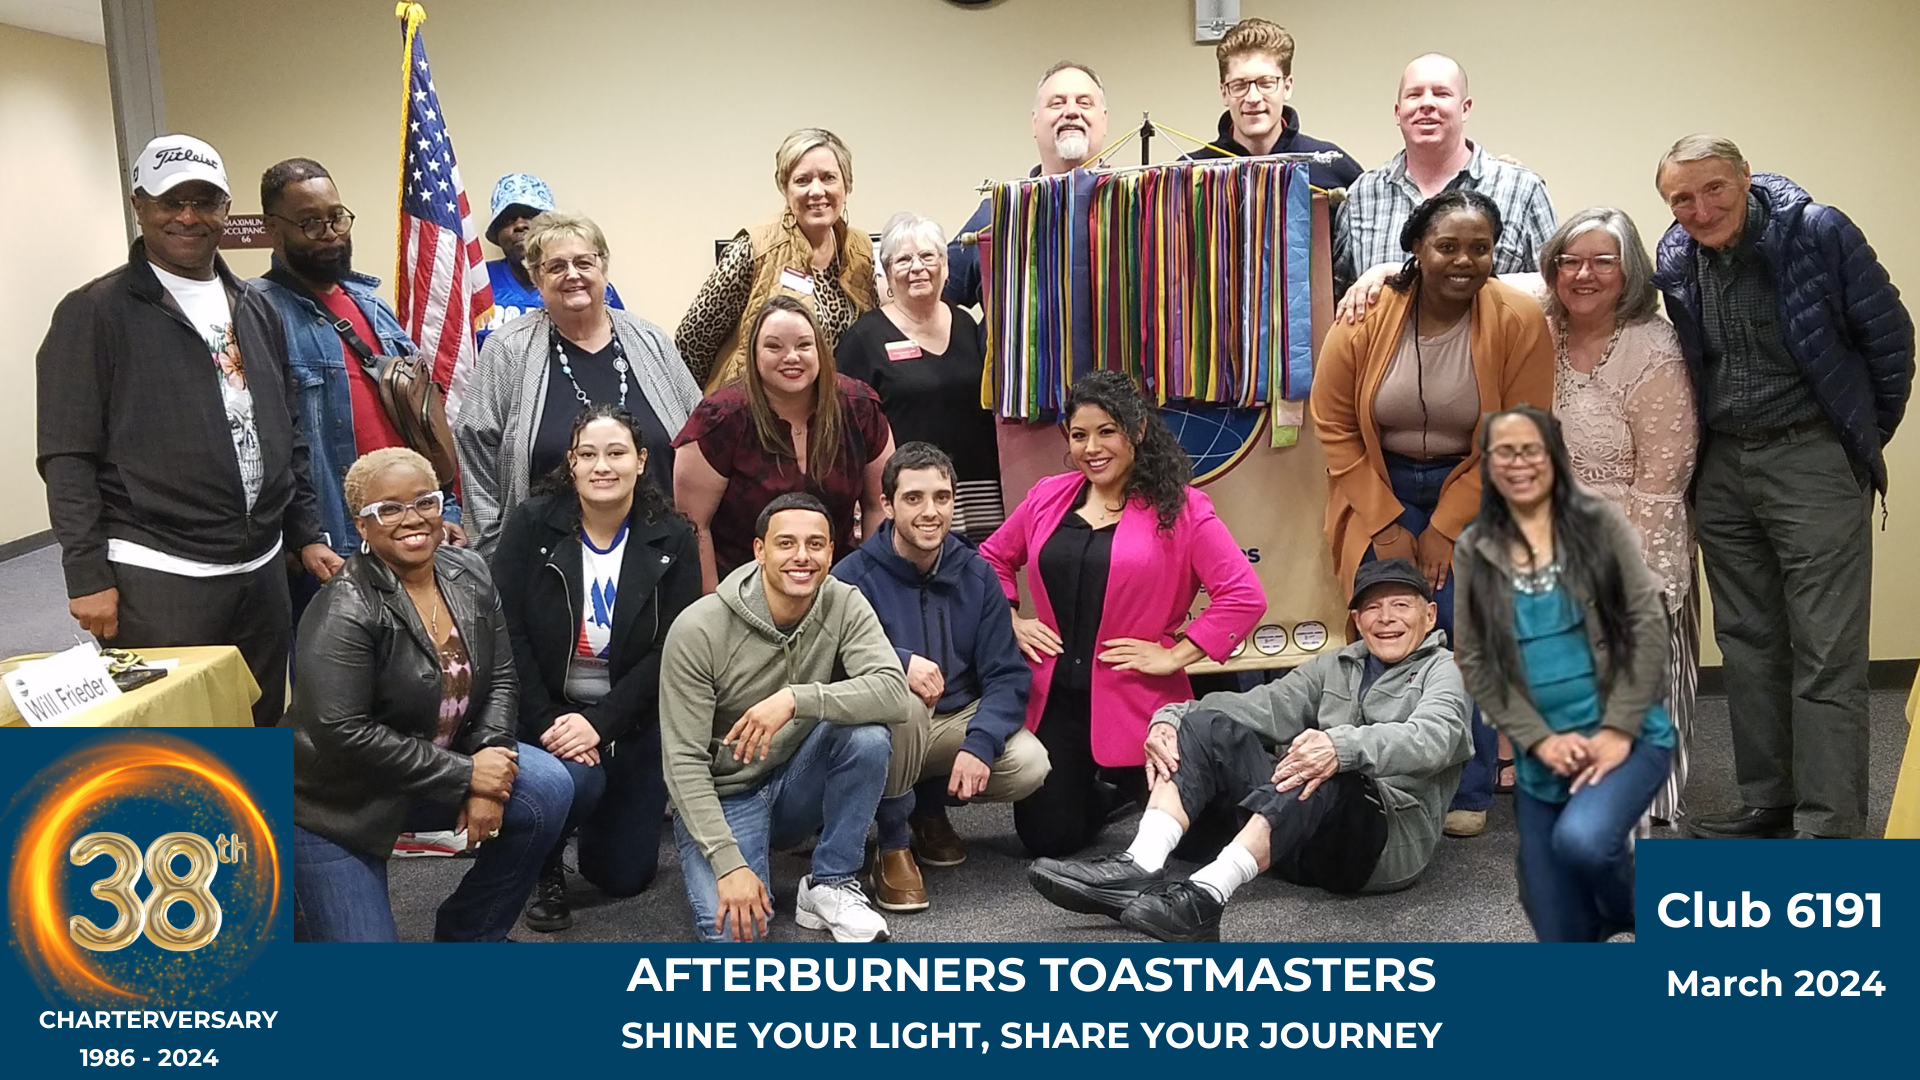 Afterburners Toastmasters Club